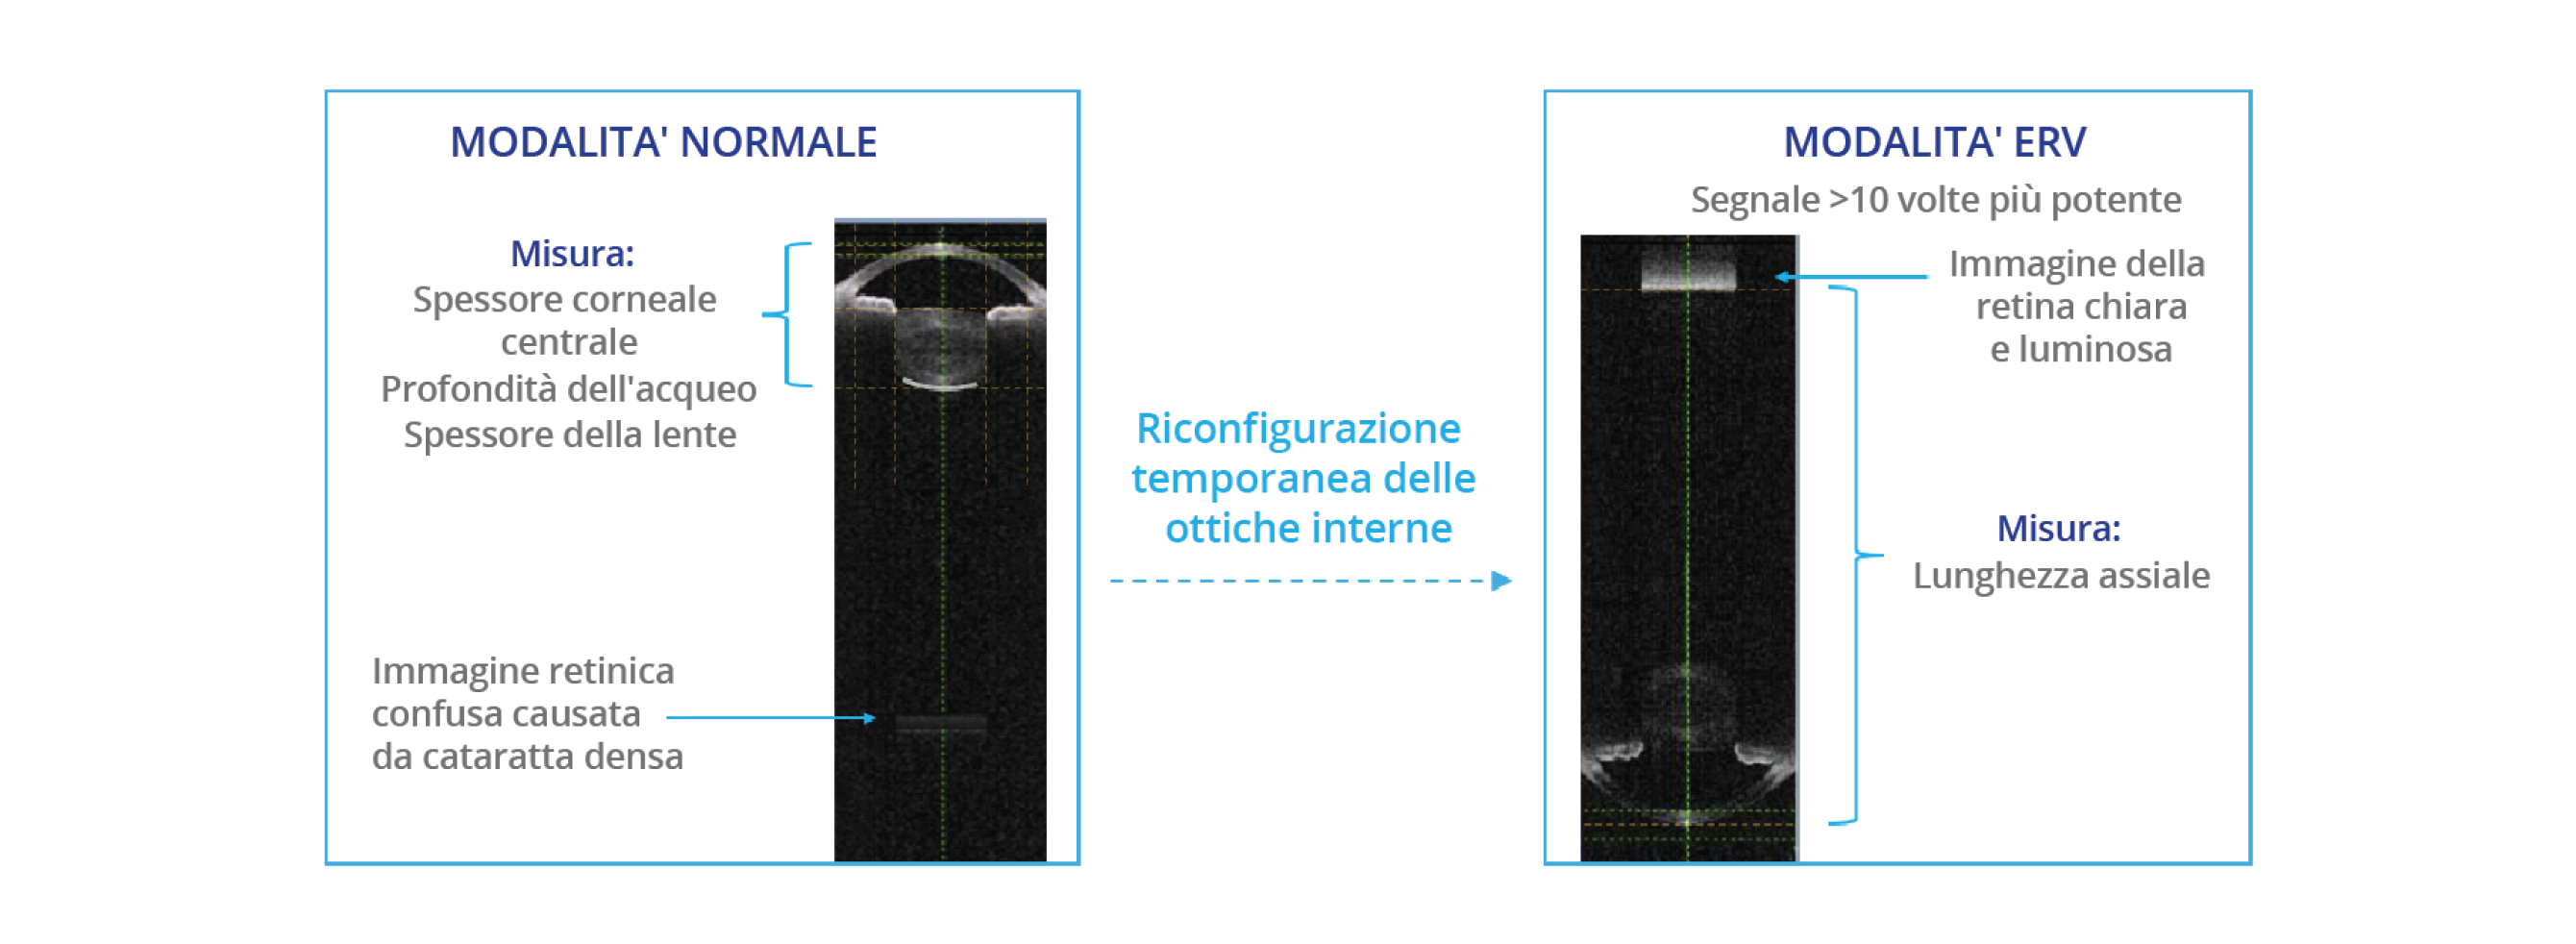 Confronto tra le immagini di biometria acquisite dal biometro ARGOS in modalità normale e in modalità ERV (enhanced retina visualization). La modalità ERV riconfigura l'ottica interna per migliorare il segnale sulla retina di 10 volte rispetto alla modalità normale.